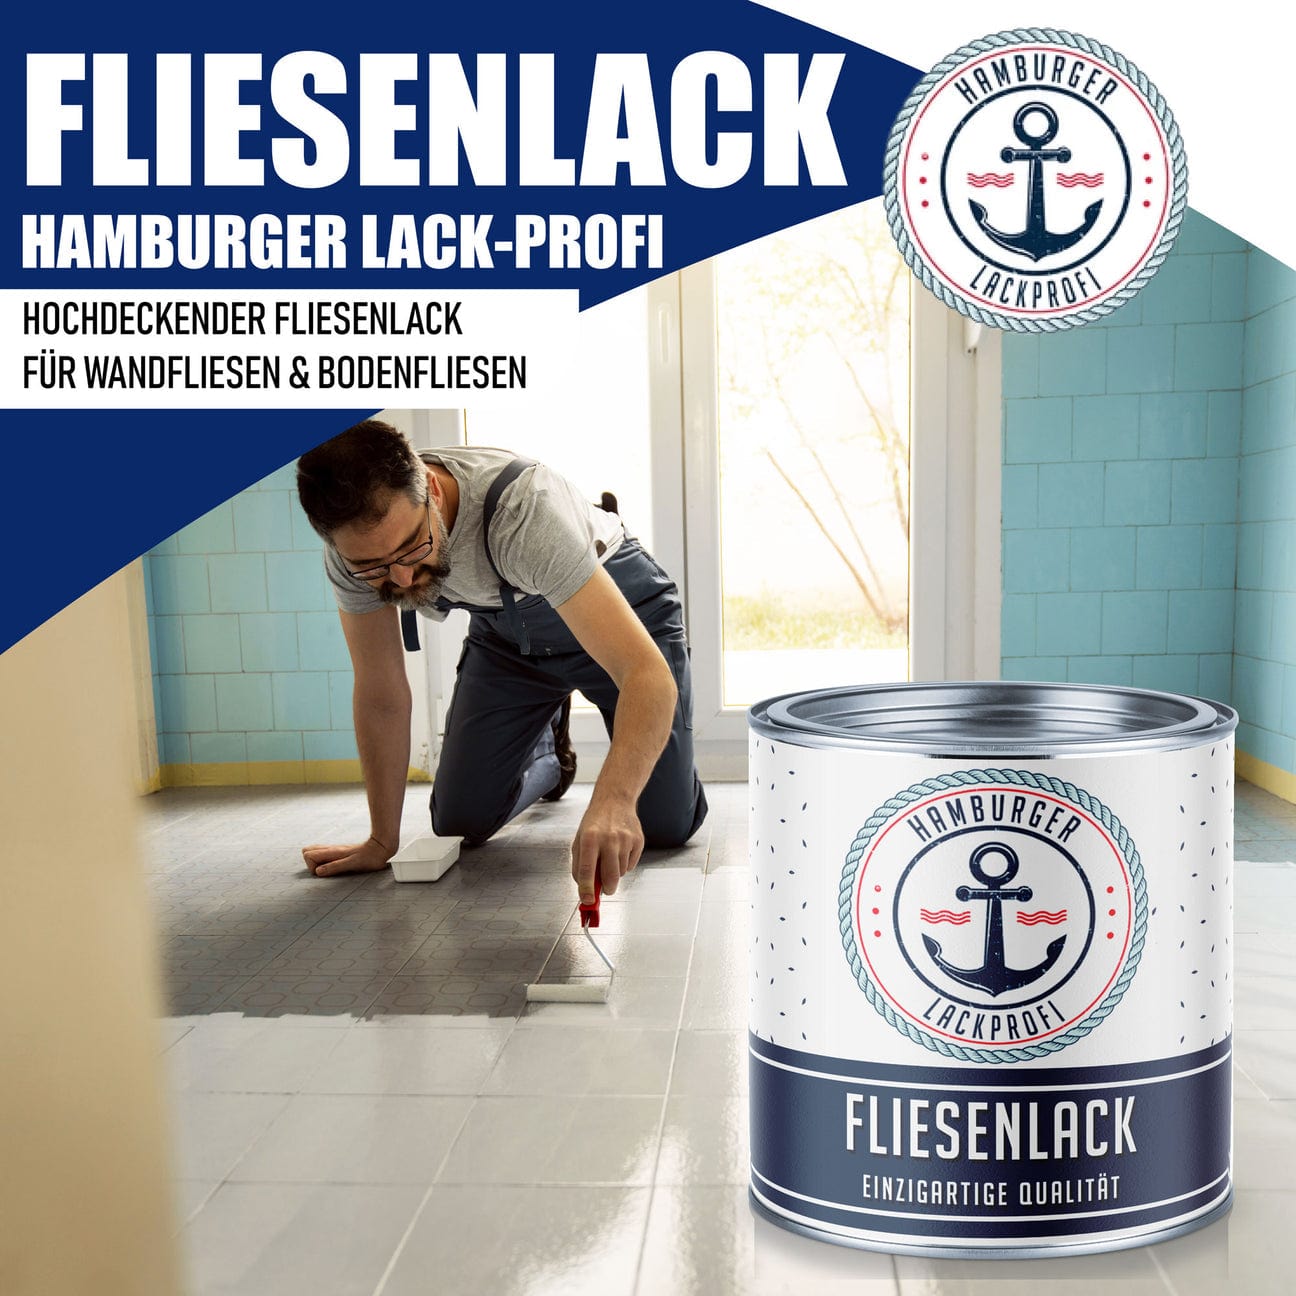 Hamburger Lack-Profi Hamburger Lack-Profi Fliesenlack Schilfgrün RAL 6013 - hochdeckende Fliesenfarbe Grün